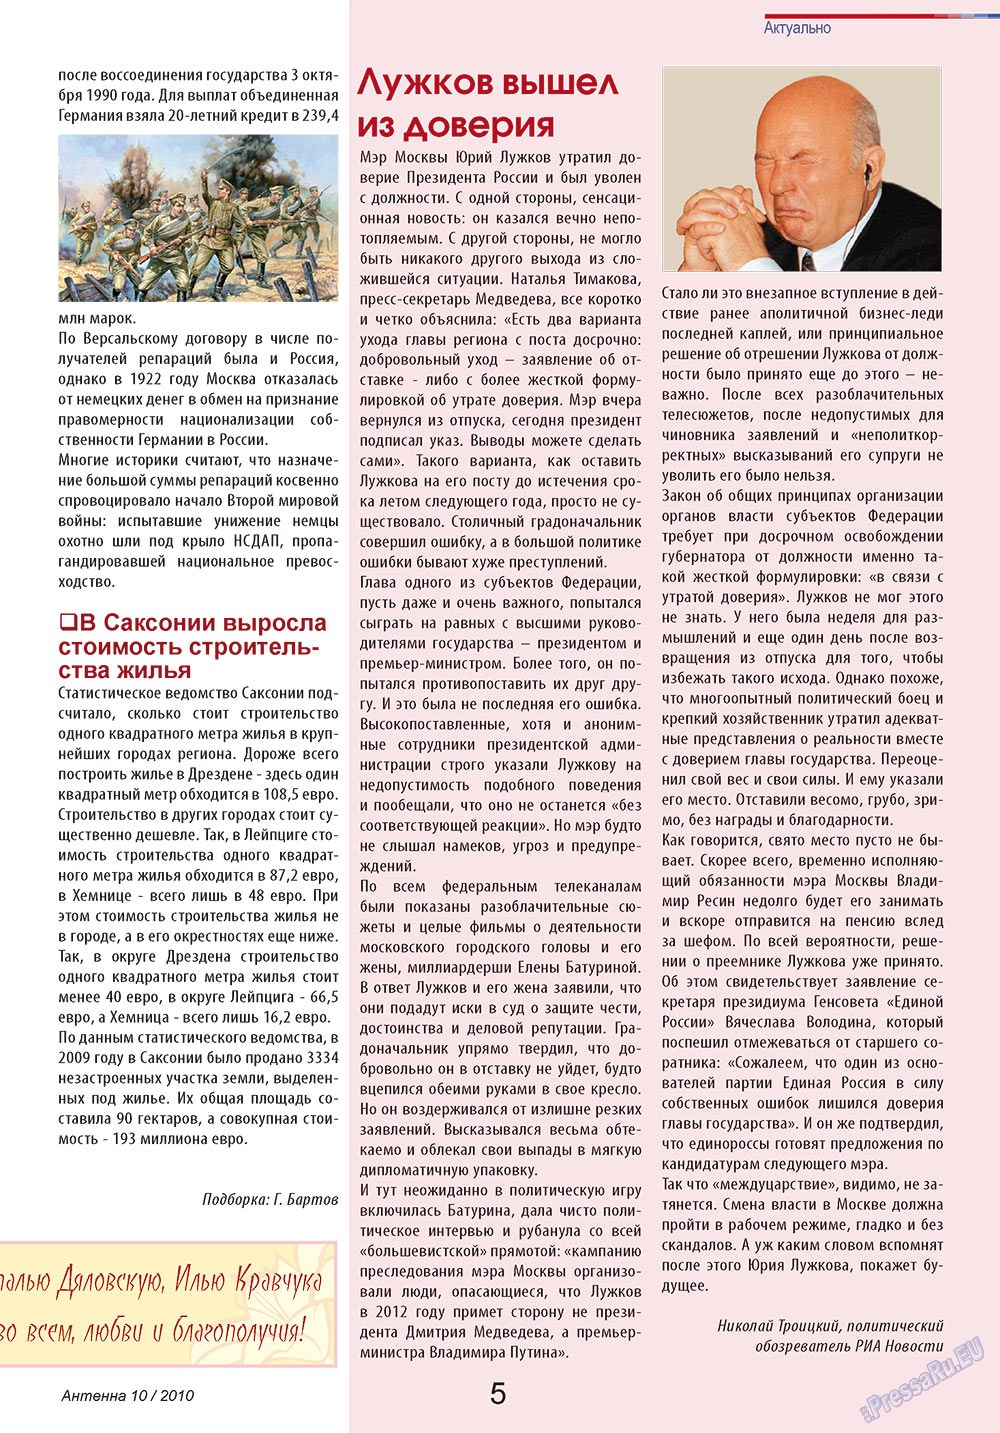 Антенна, журнал. 2010 №10 стр.5